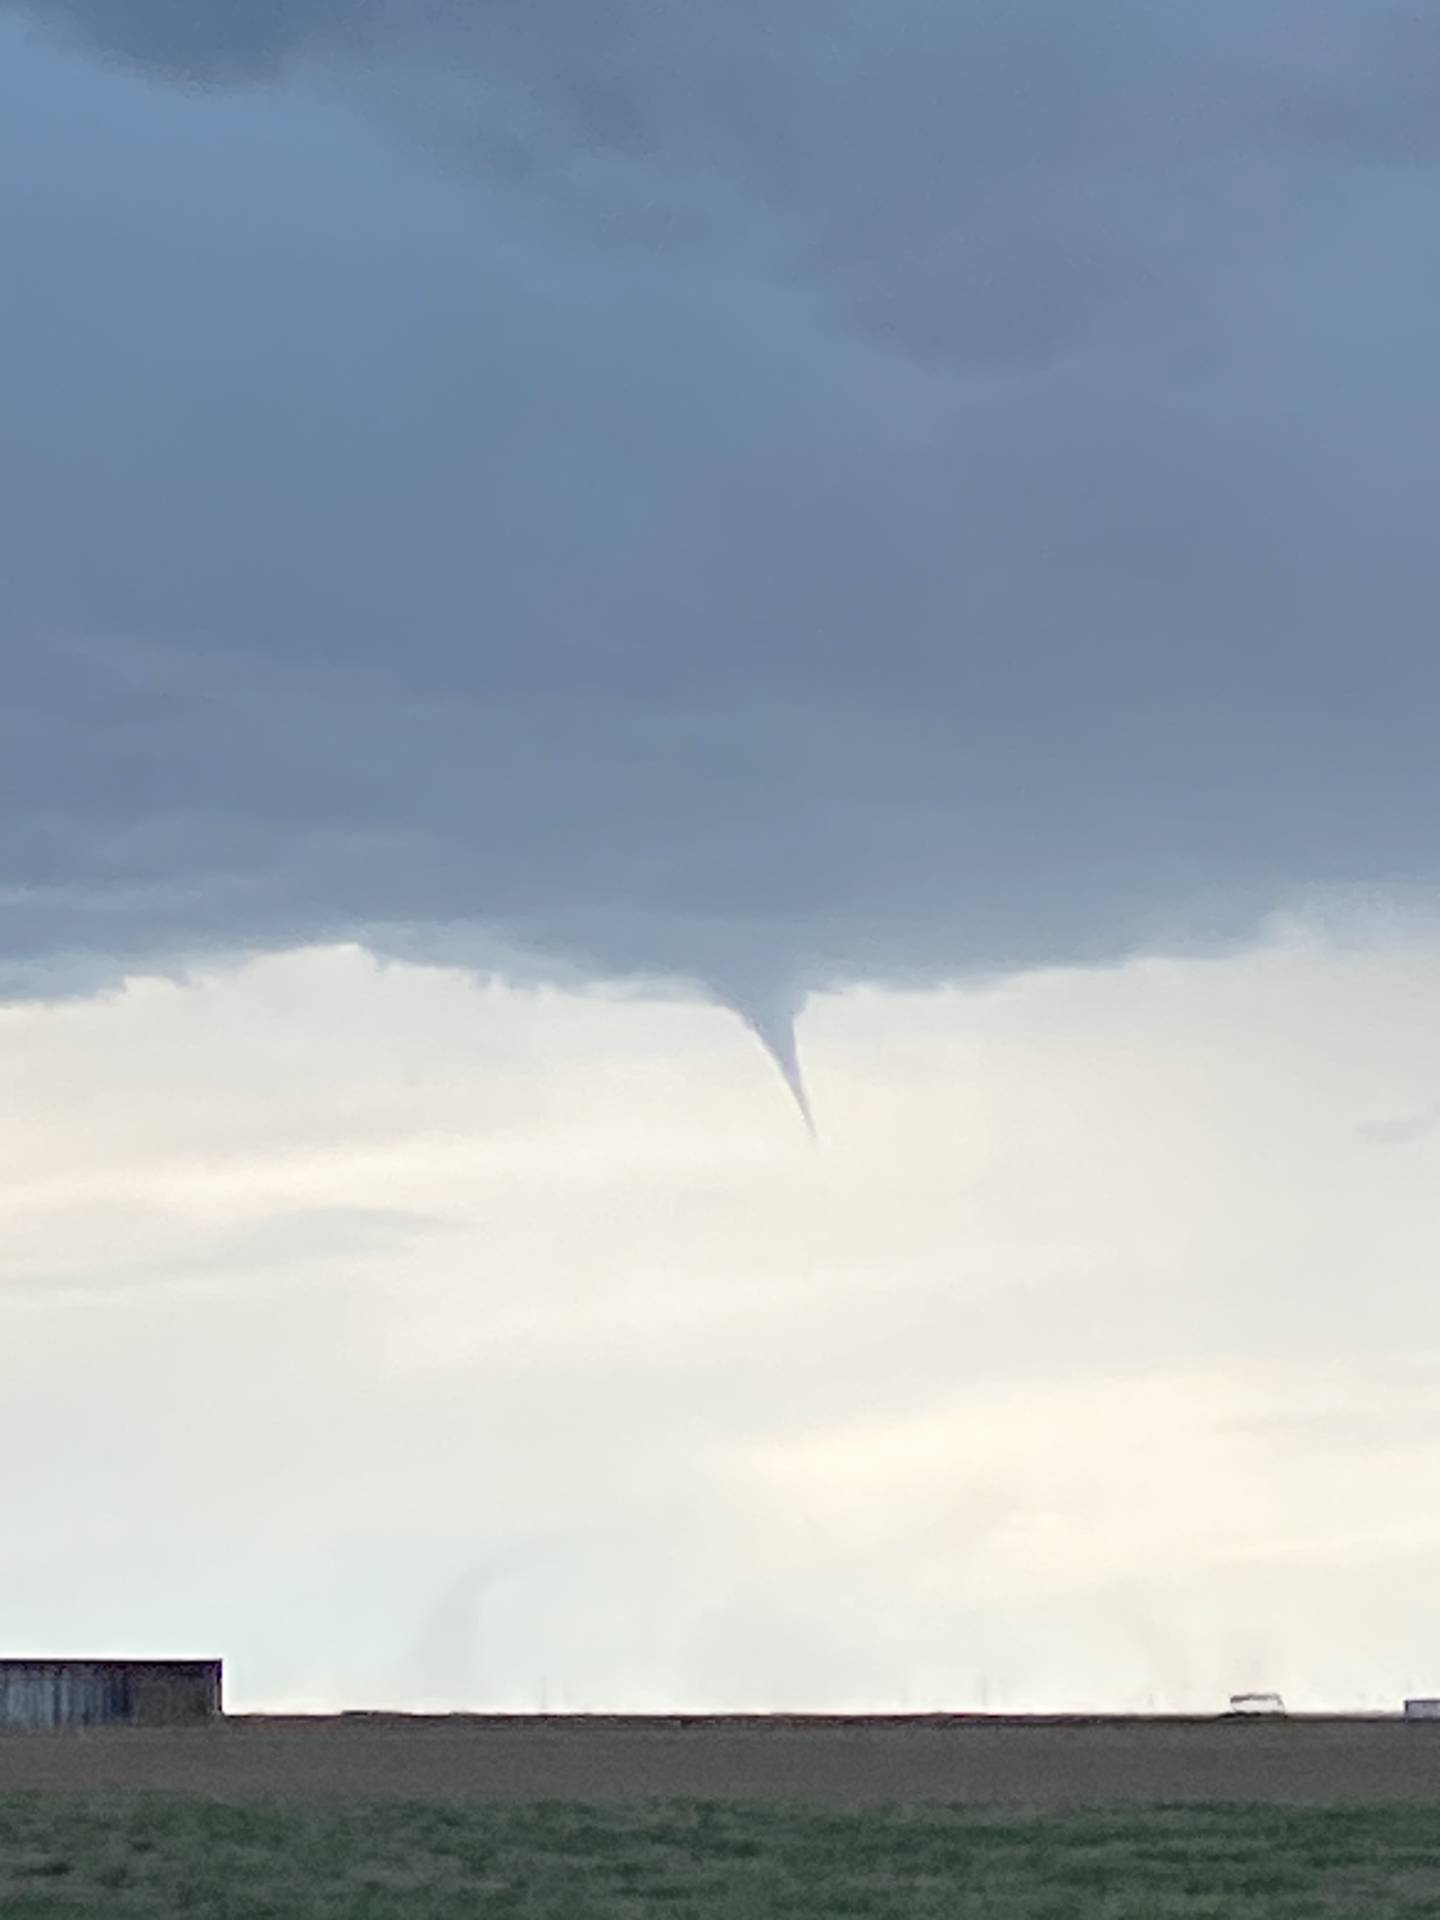 Confirmed tornado